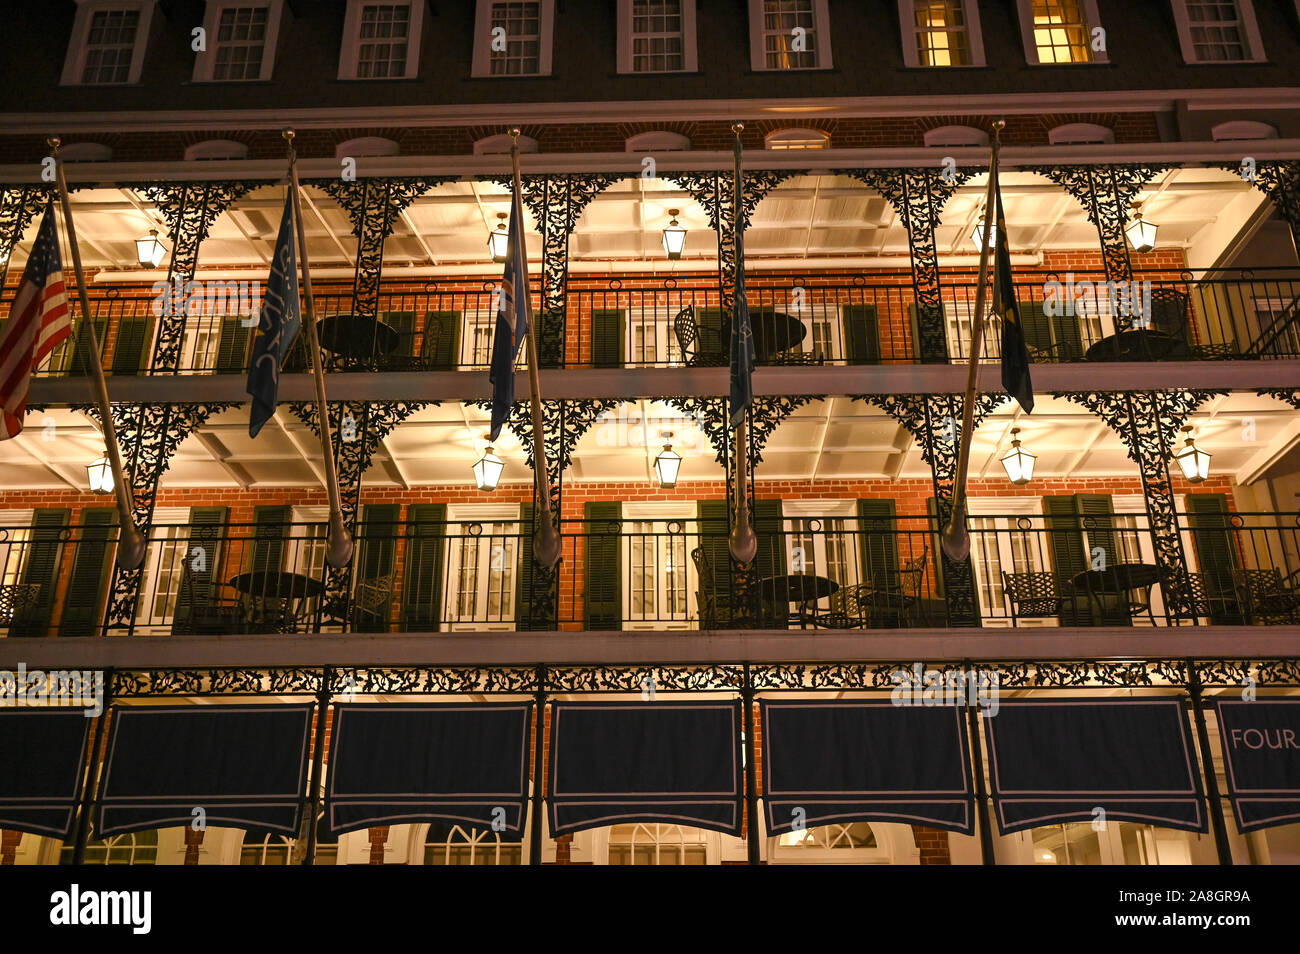 Four Points by Sheraton Hotel sur la rue Bourbon par nuit à La Nouvelle-Orléans. Cette rue historique dans le quartier français est célèbre pour sa vie nocturne. Banque D'Images